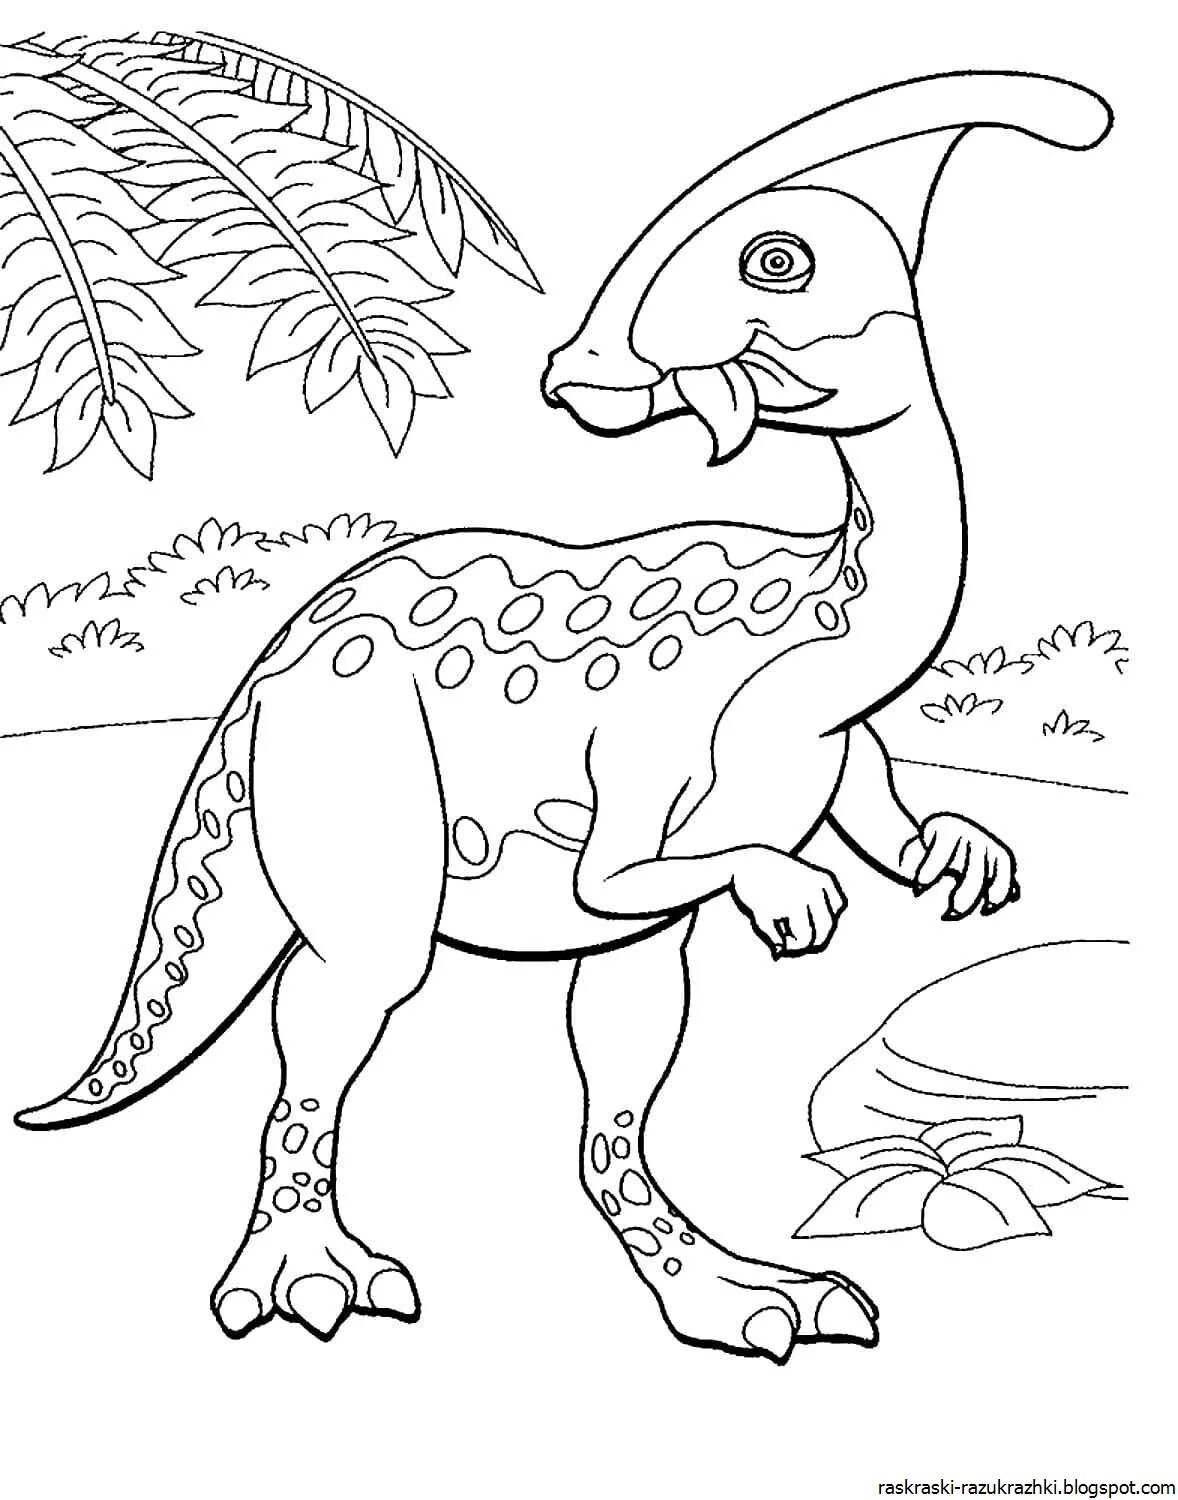 Раскраска динозавр формат а4. Дино раскраска динозавры. Перри Паразауролоф. Динозавр раскраска для детей. Динозаврики раскраска для детей.